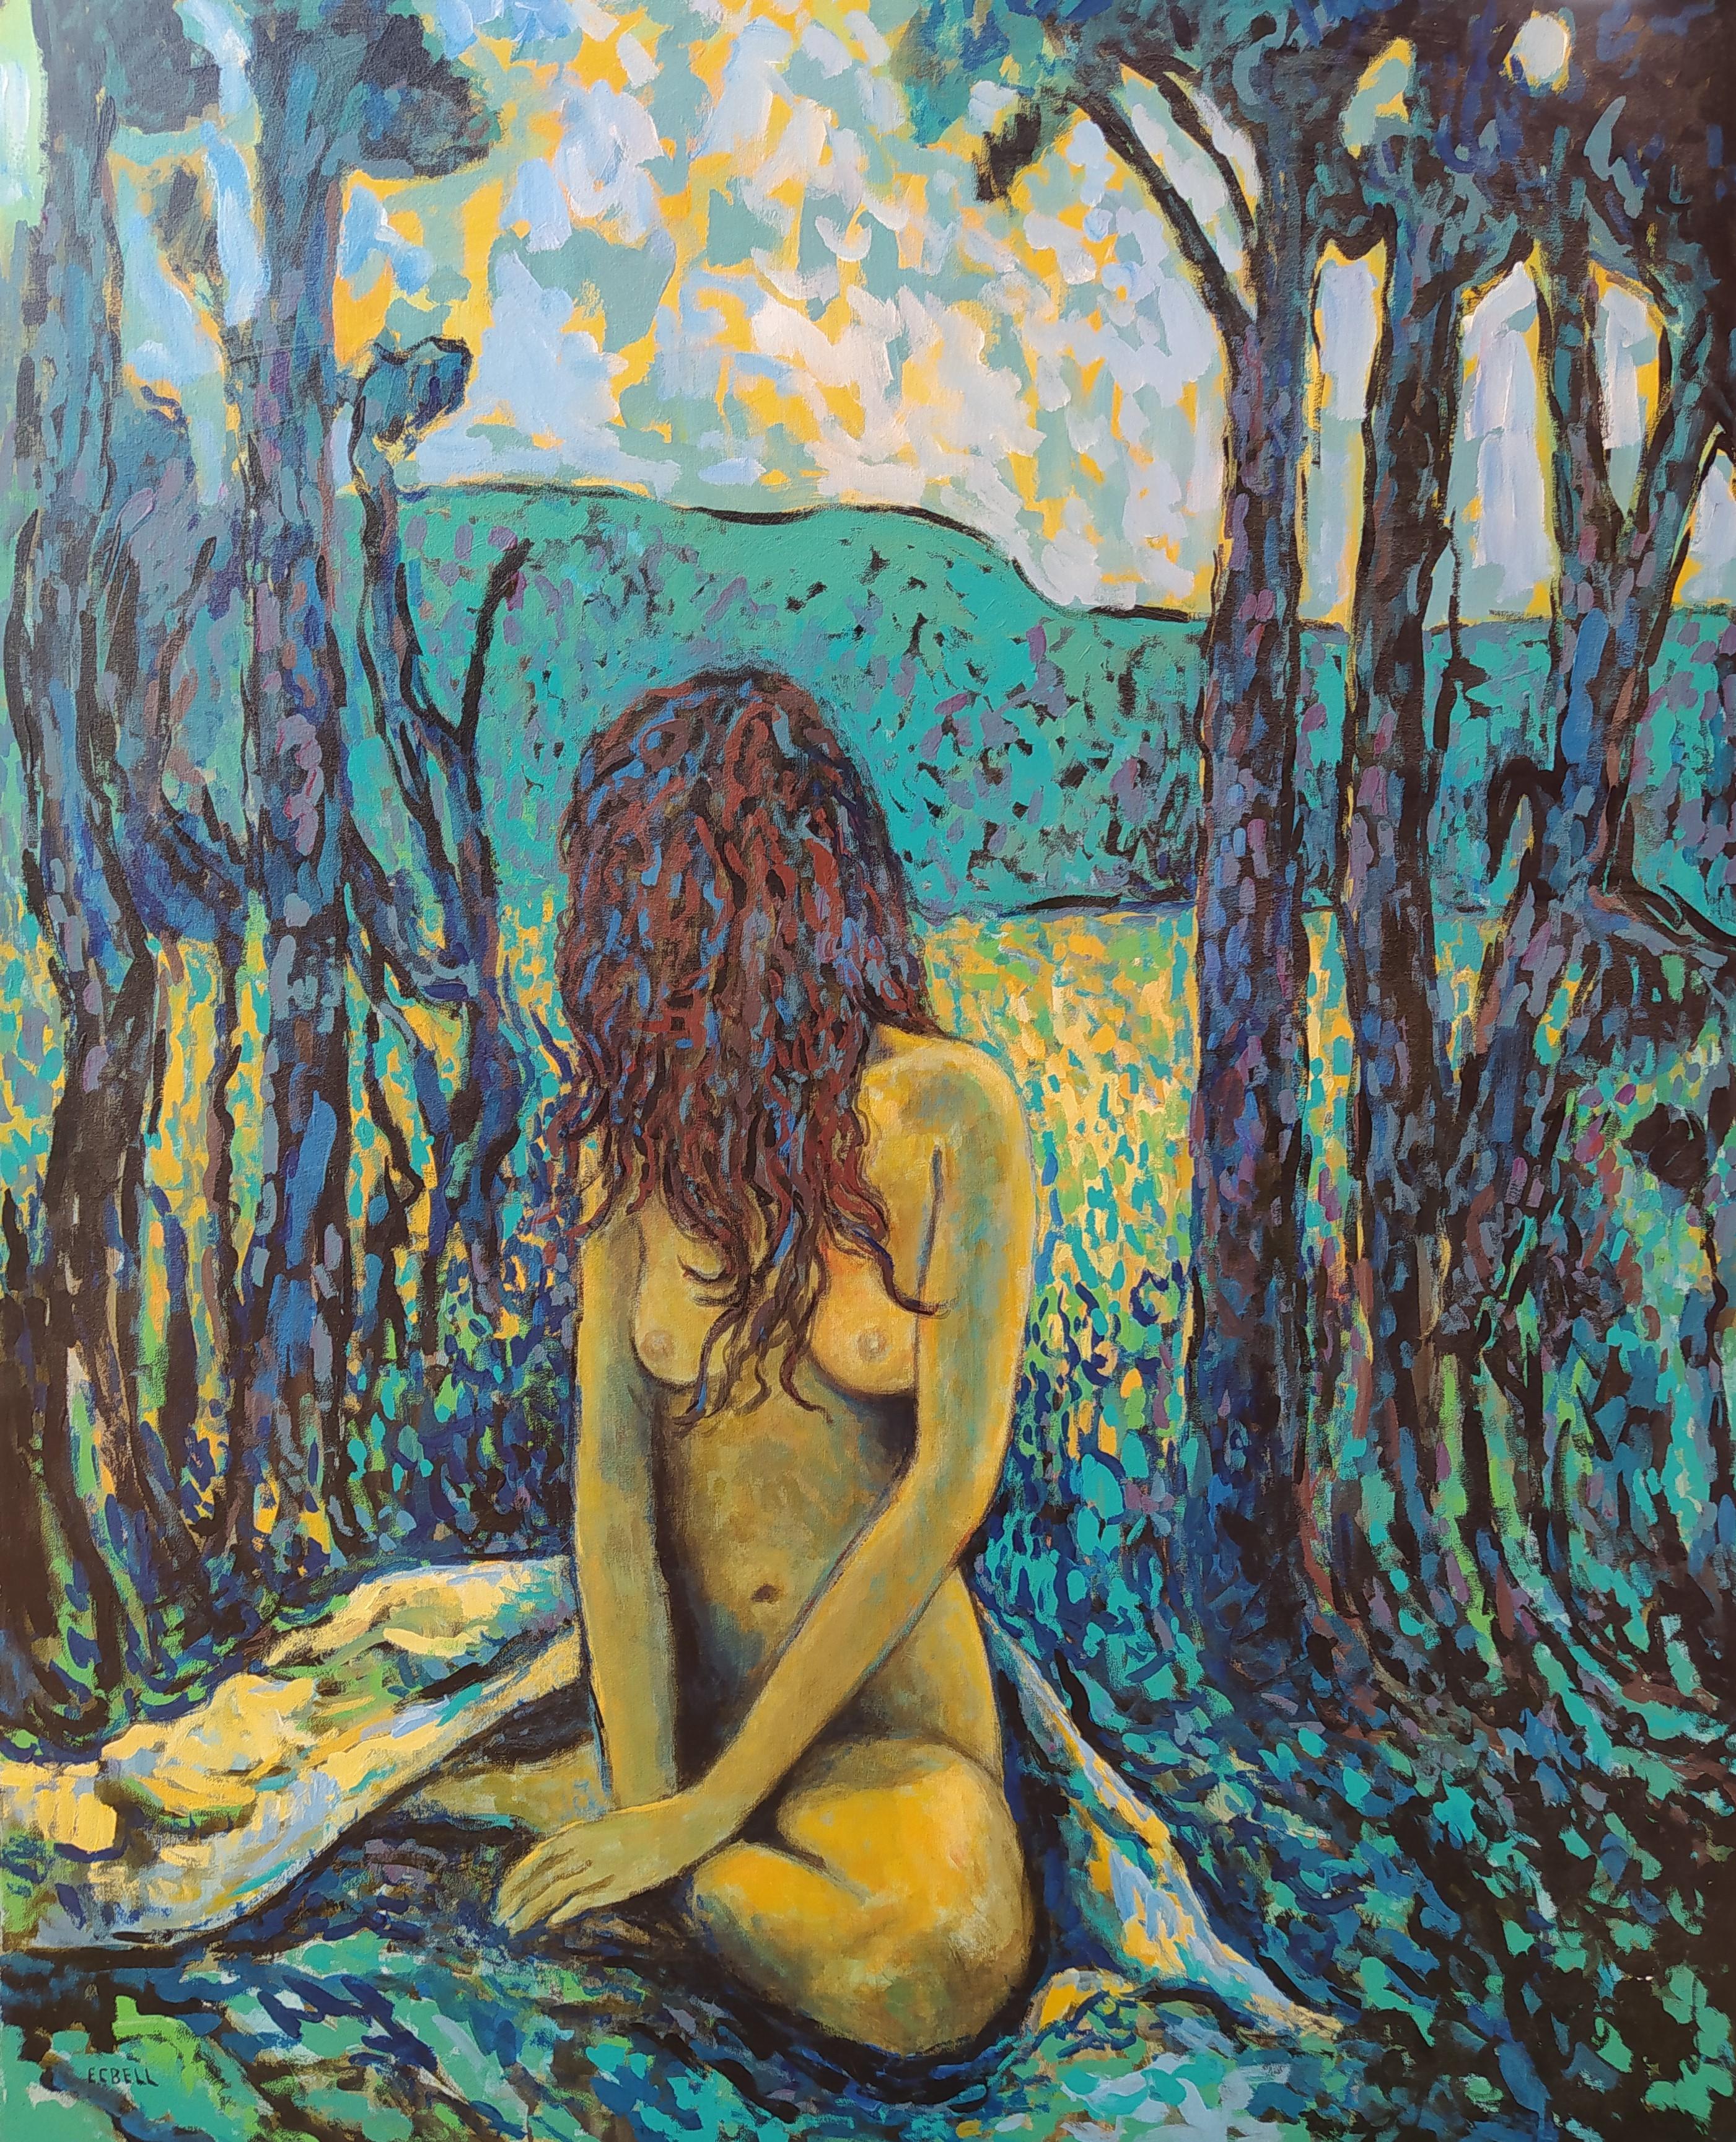 "Rhonda" - Paysage expressionniste avec nu, acrylique sur toile bleue